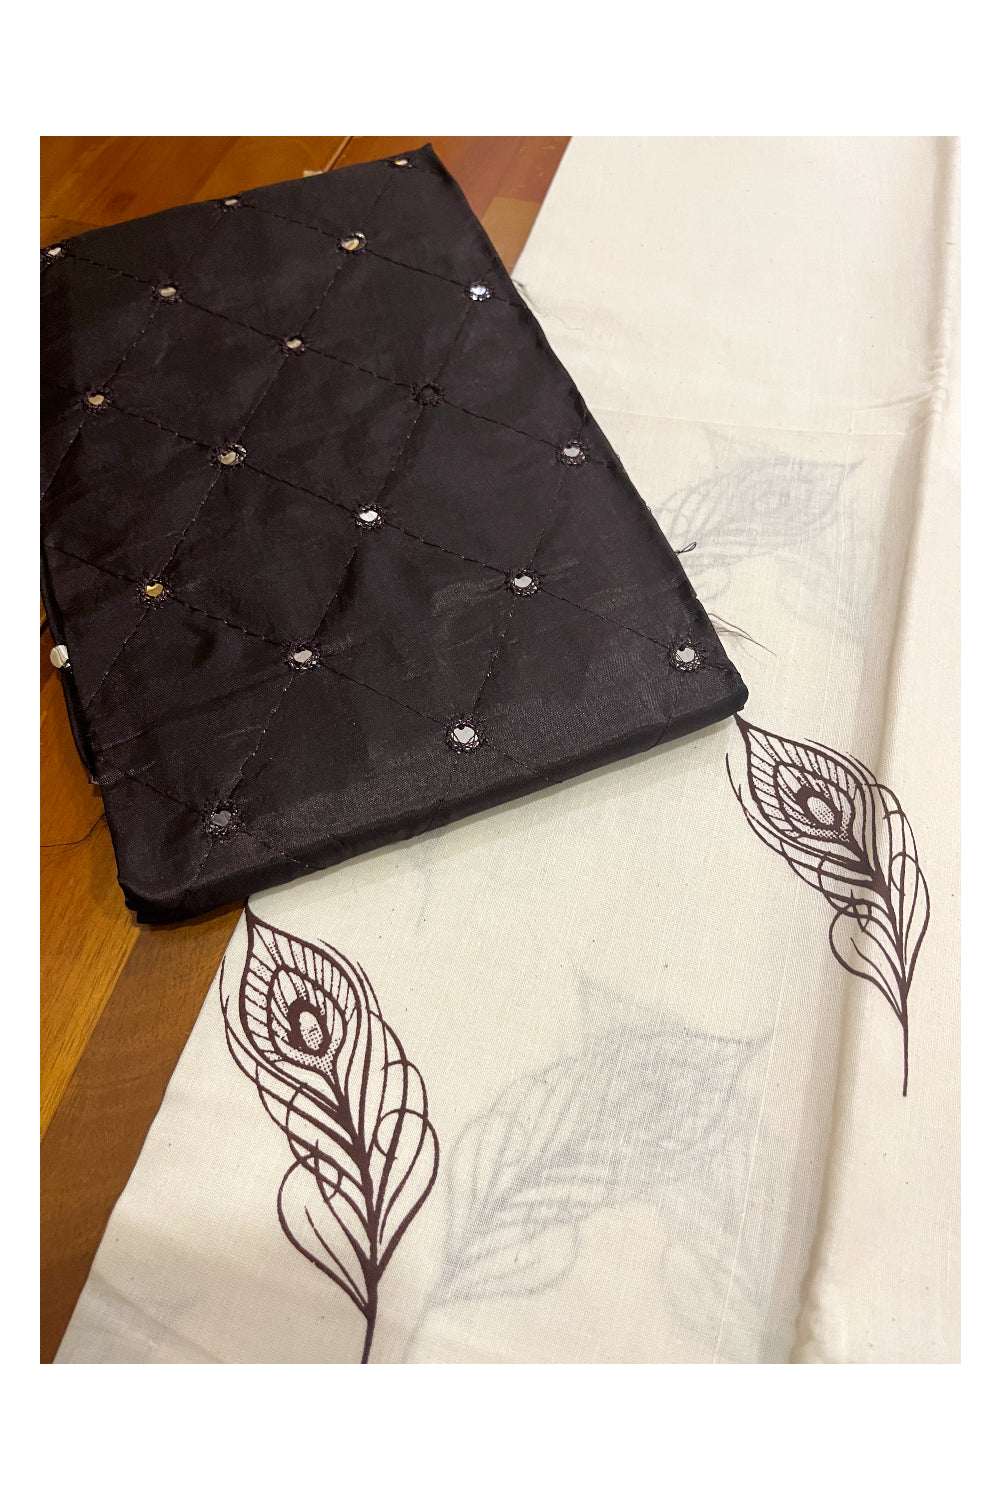 Kerala Cotton Block Printed Pavada and Dark Brown Designer Blouse Material for Kids/Girls 4.3 Meters